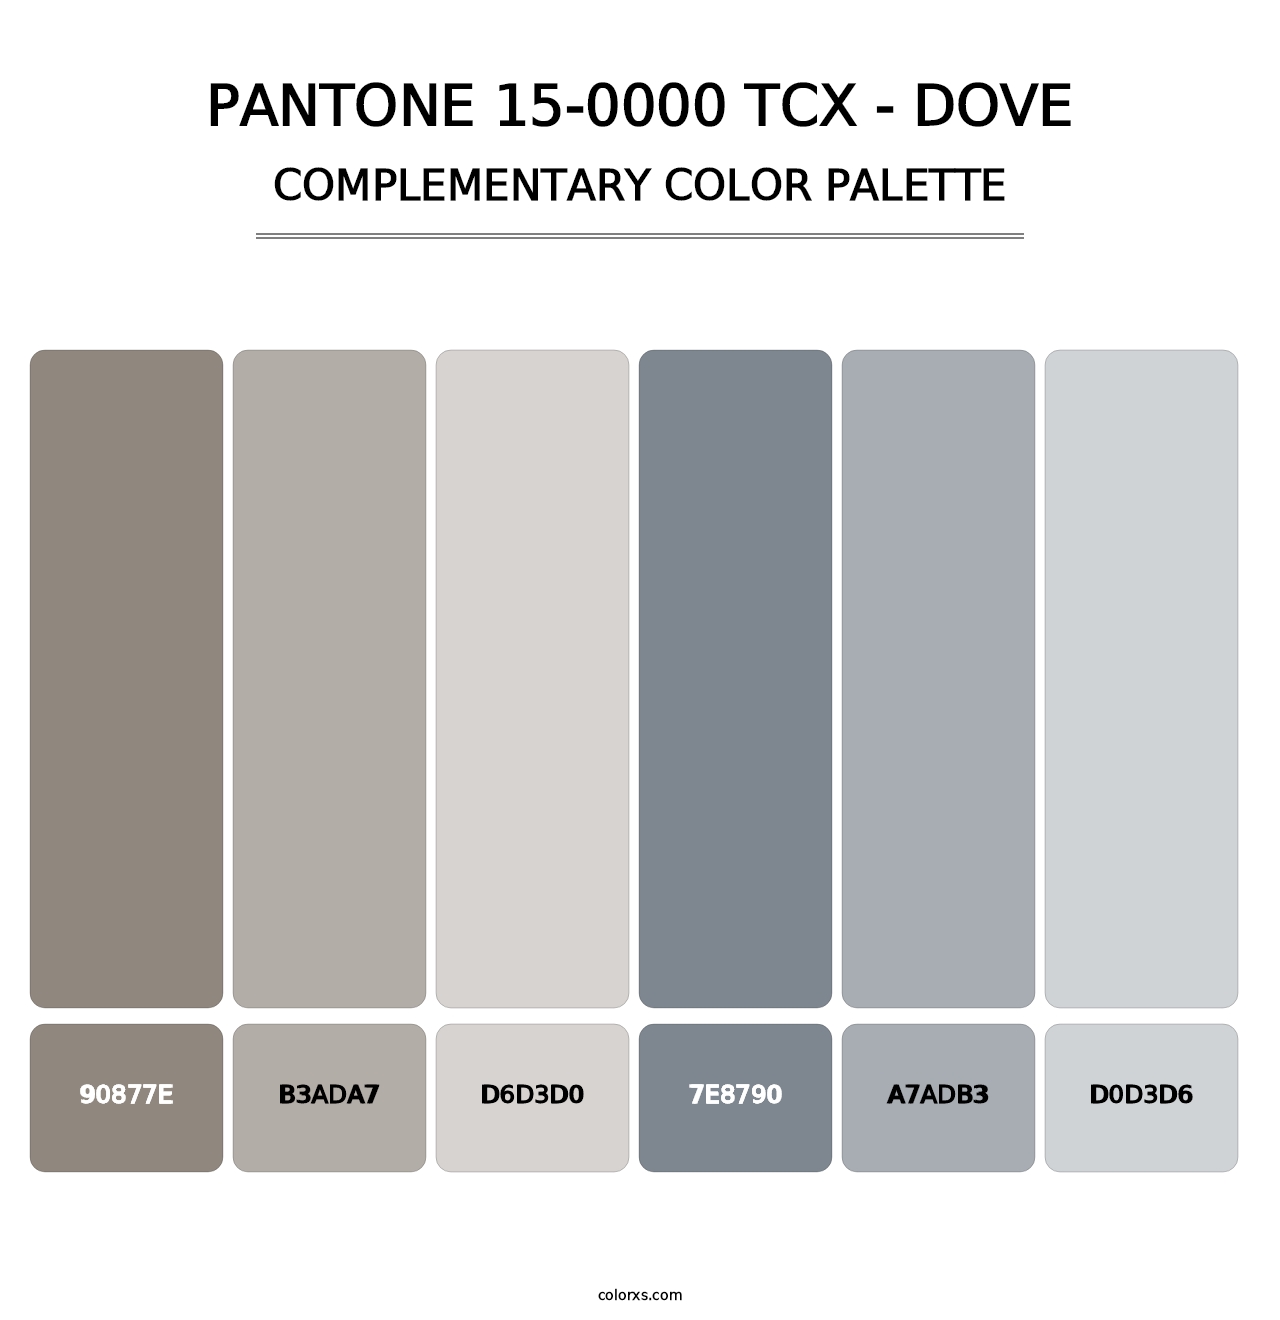 PANTONE 15-0000 TCX - Dove - Complementary Color Palette